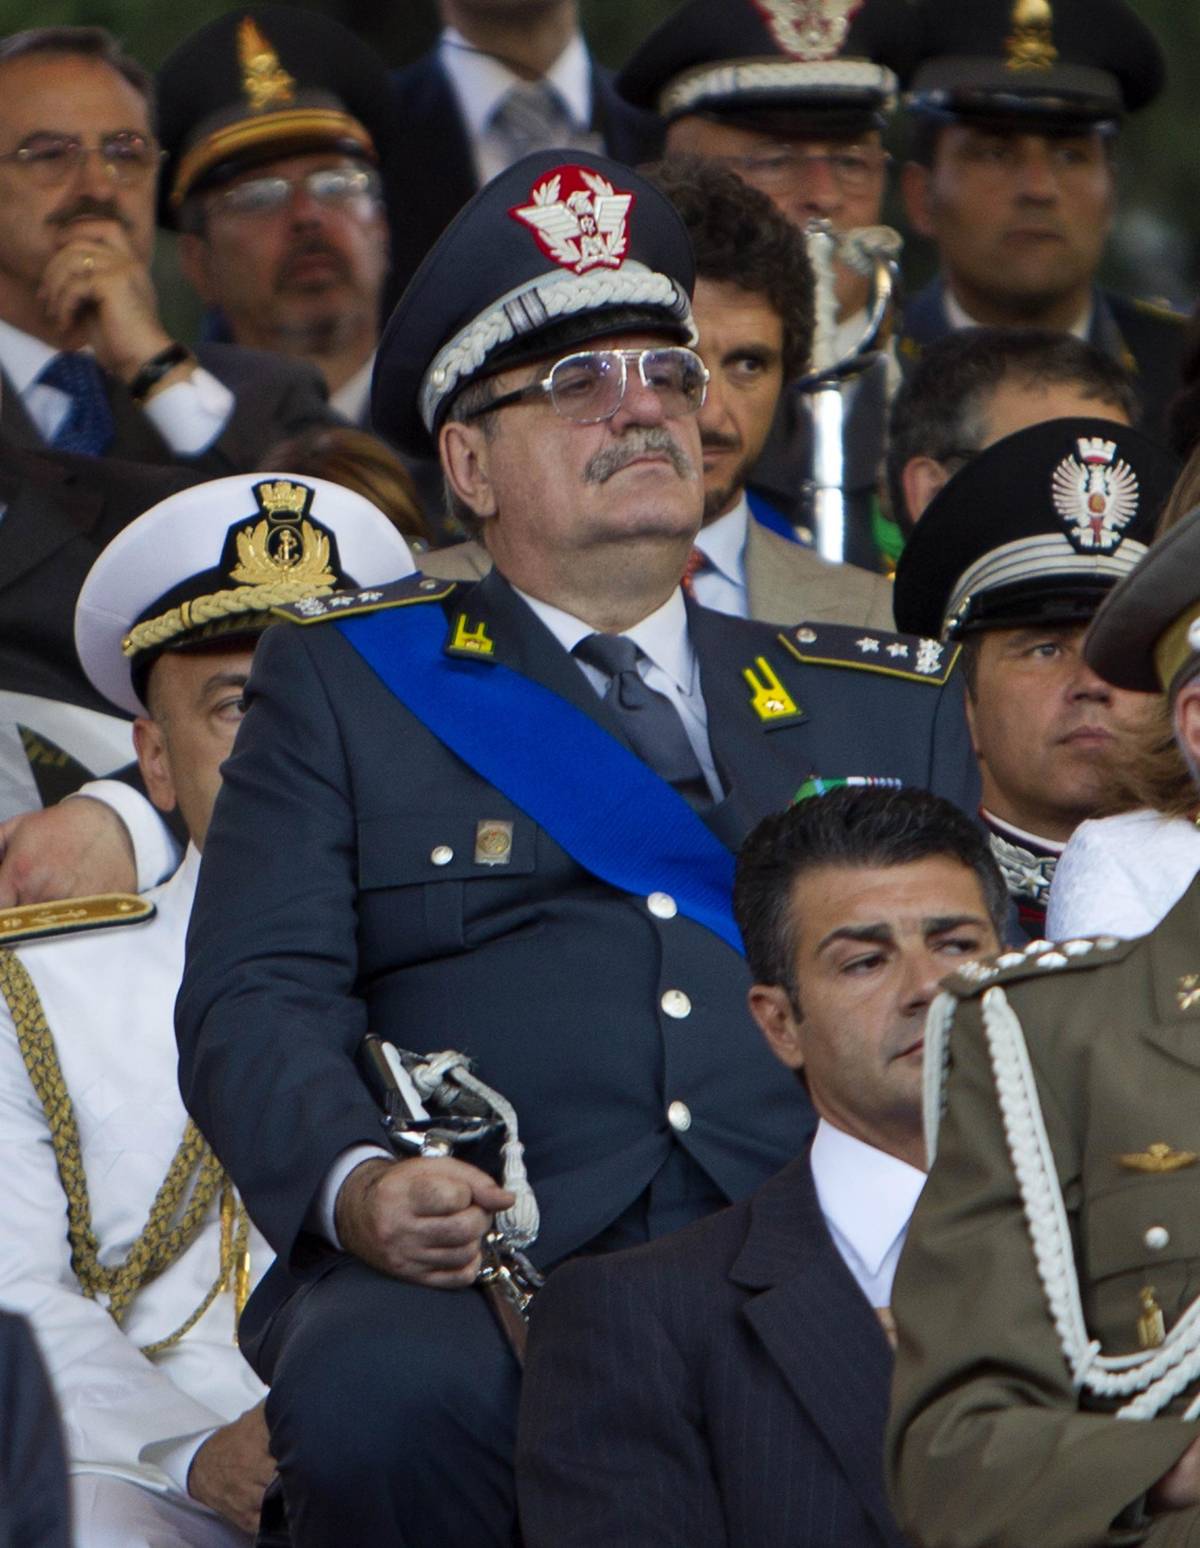 P4, vanno a Roma le carte sul generale Adinolfi
 
La difesa: "Non ci sottraiamo all'interrogatorio"